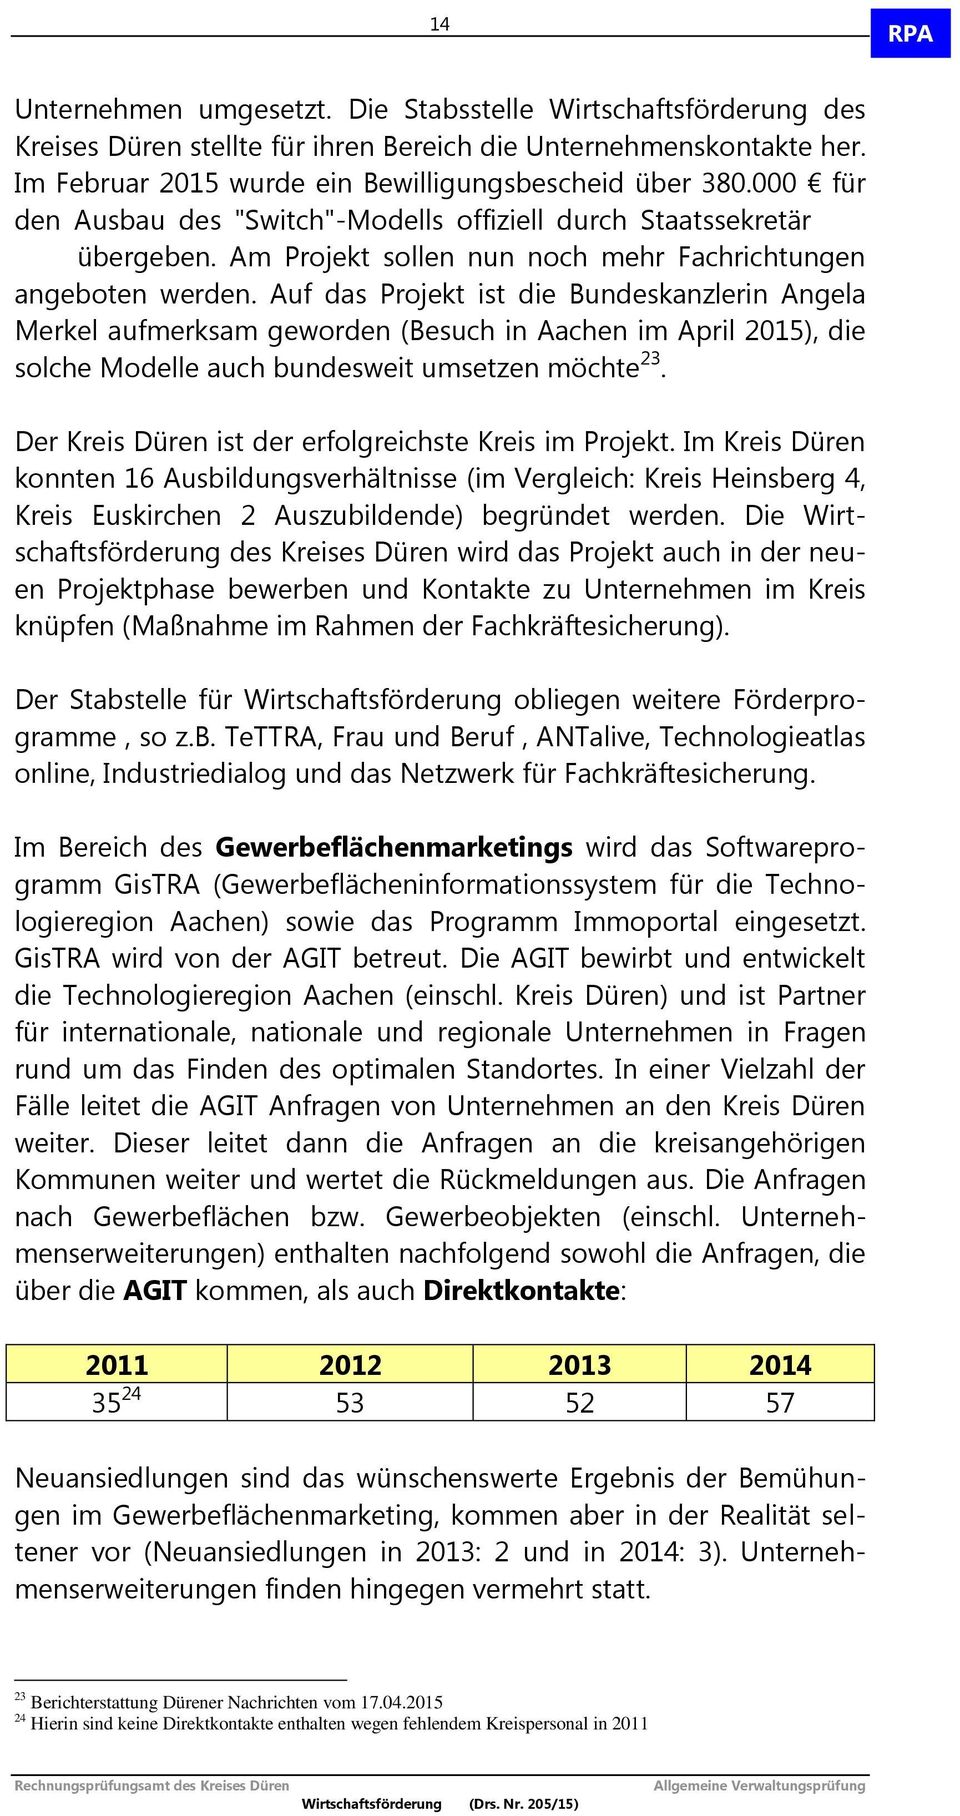 Auf das Projekt ist die Bundeskanzlerin Angela Merkel aufmerksam geworden (Besuch in Aachen im April 2015), die solche Modelle auch bundesweit umsetzen möchte 23.